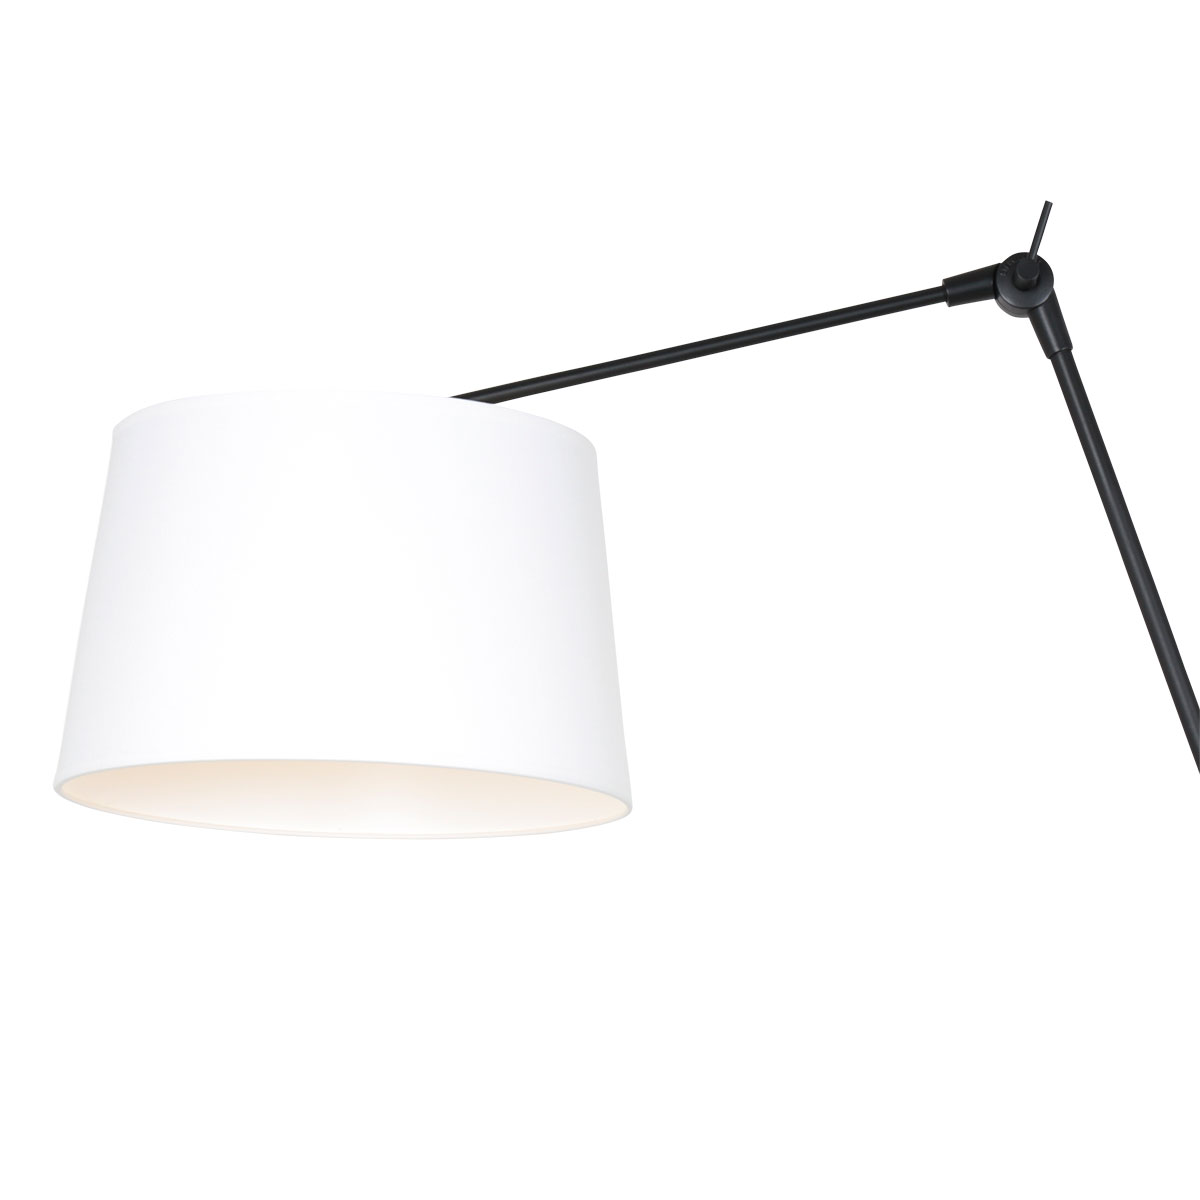 Steinhauer Wandlamp Prestige chic | 1-lichts | kantelbaar |Ø 30 cm | modern